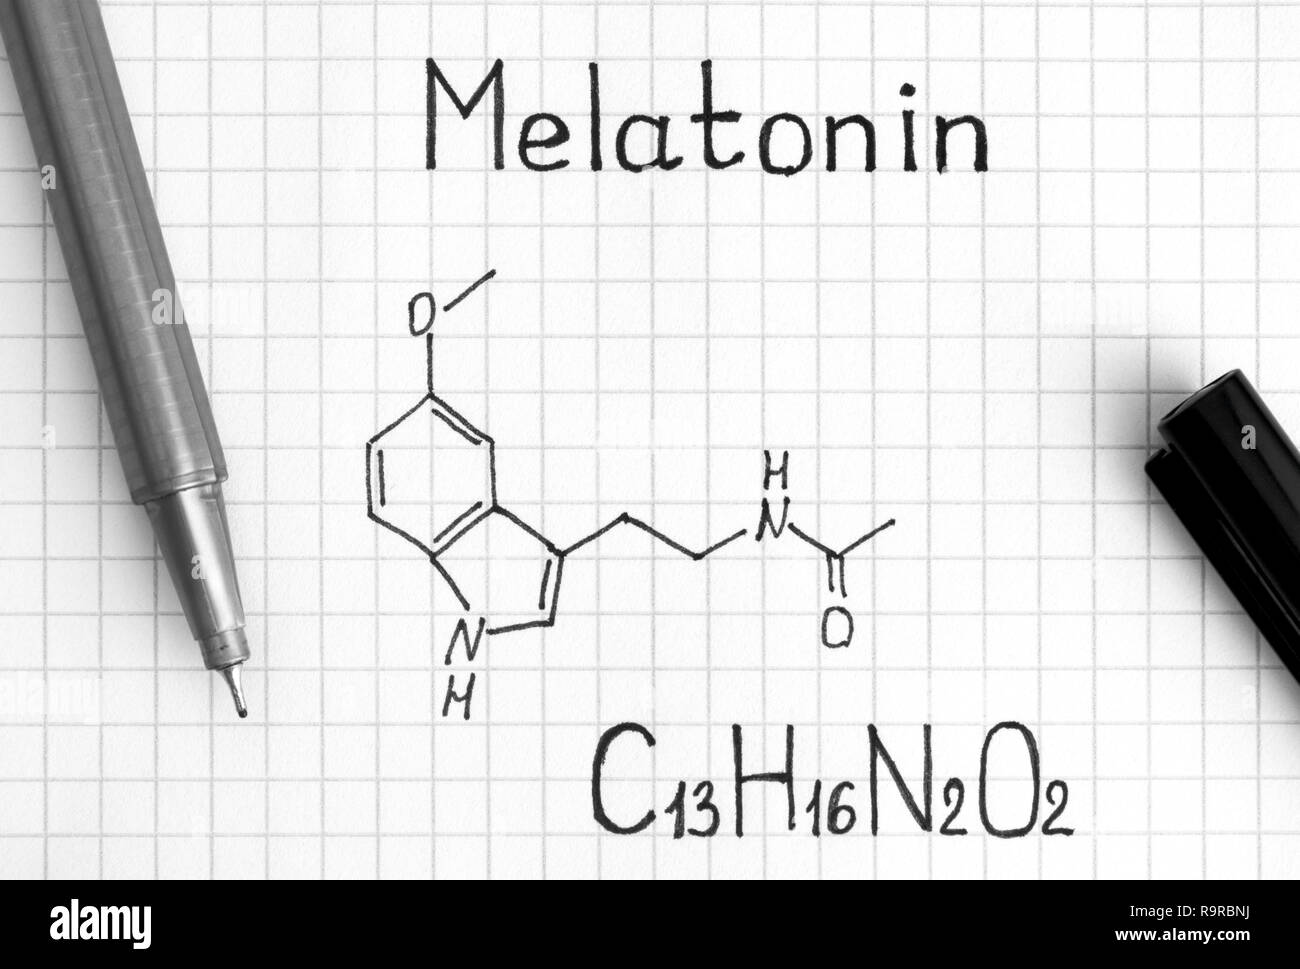 Chemical formula of Melatonin with black pen. Close-up. Stock Photo